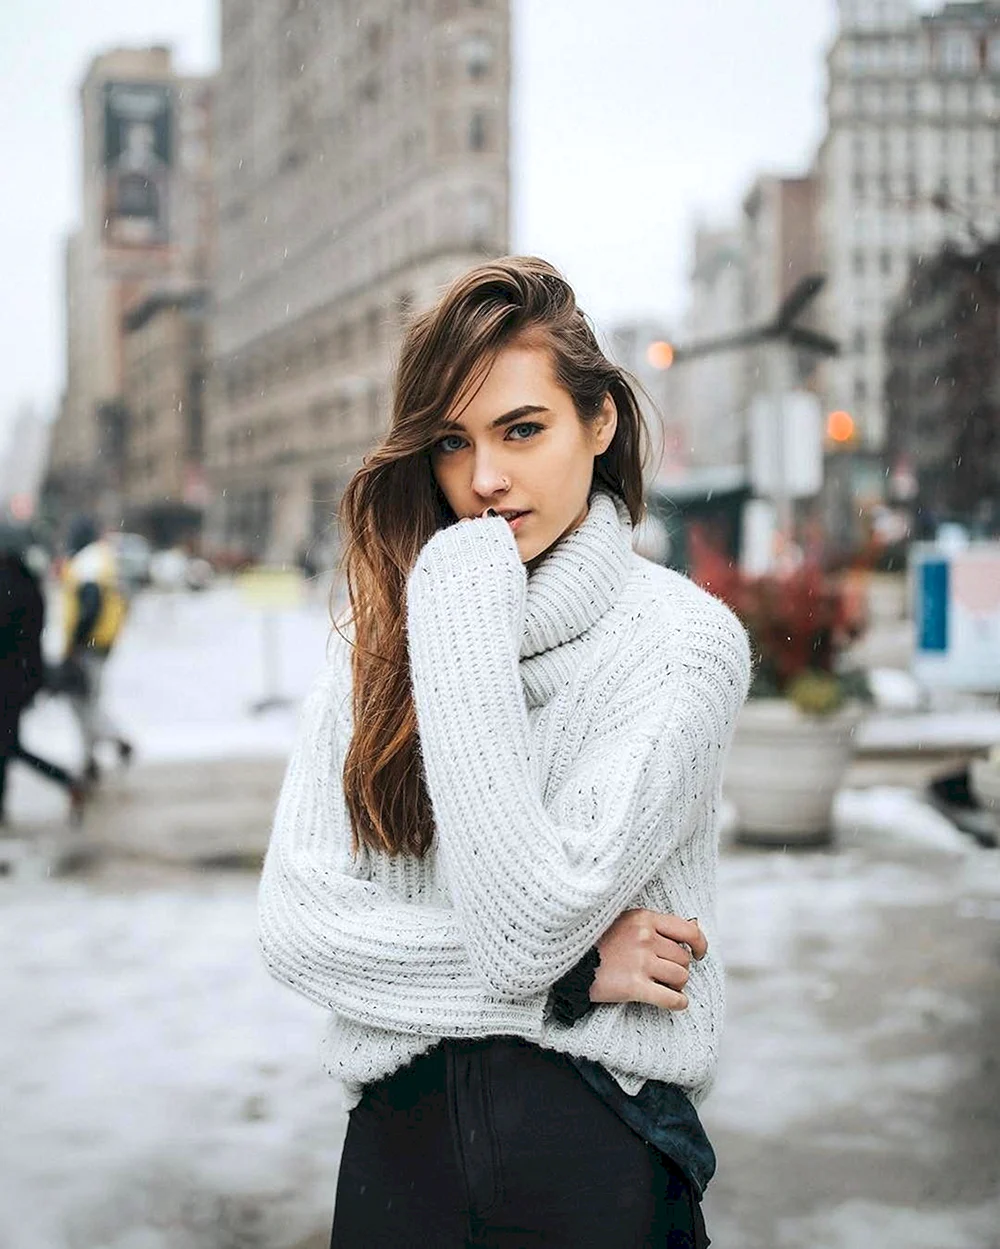 Girl in Sweater